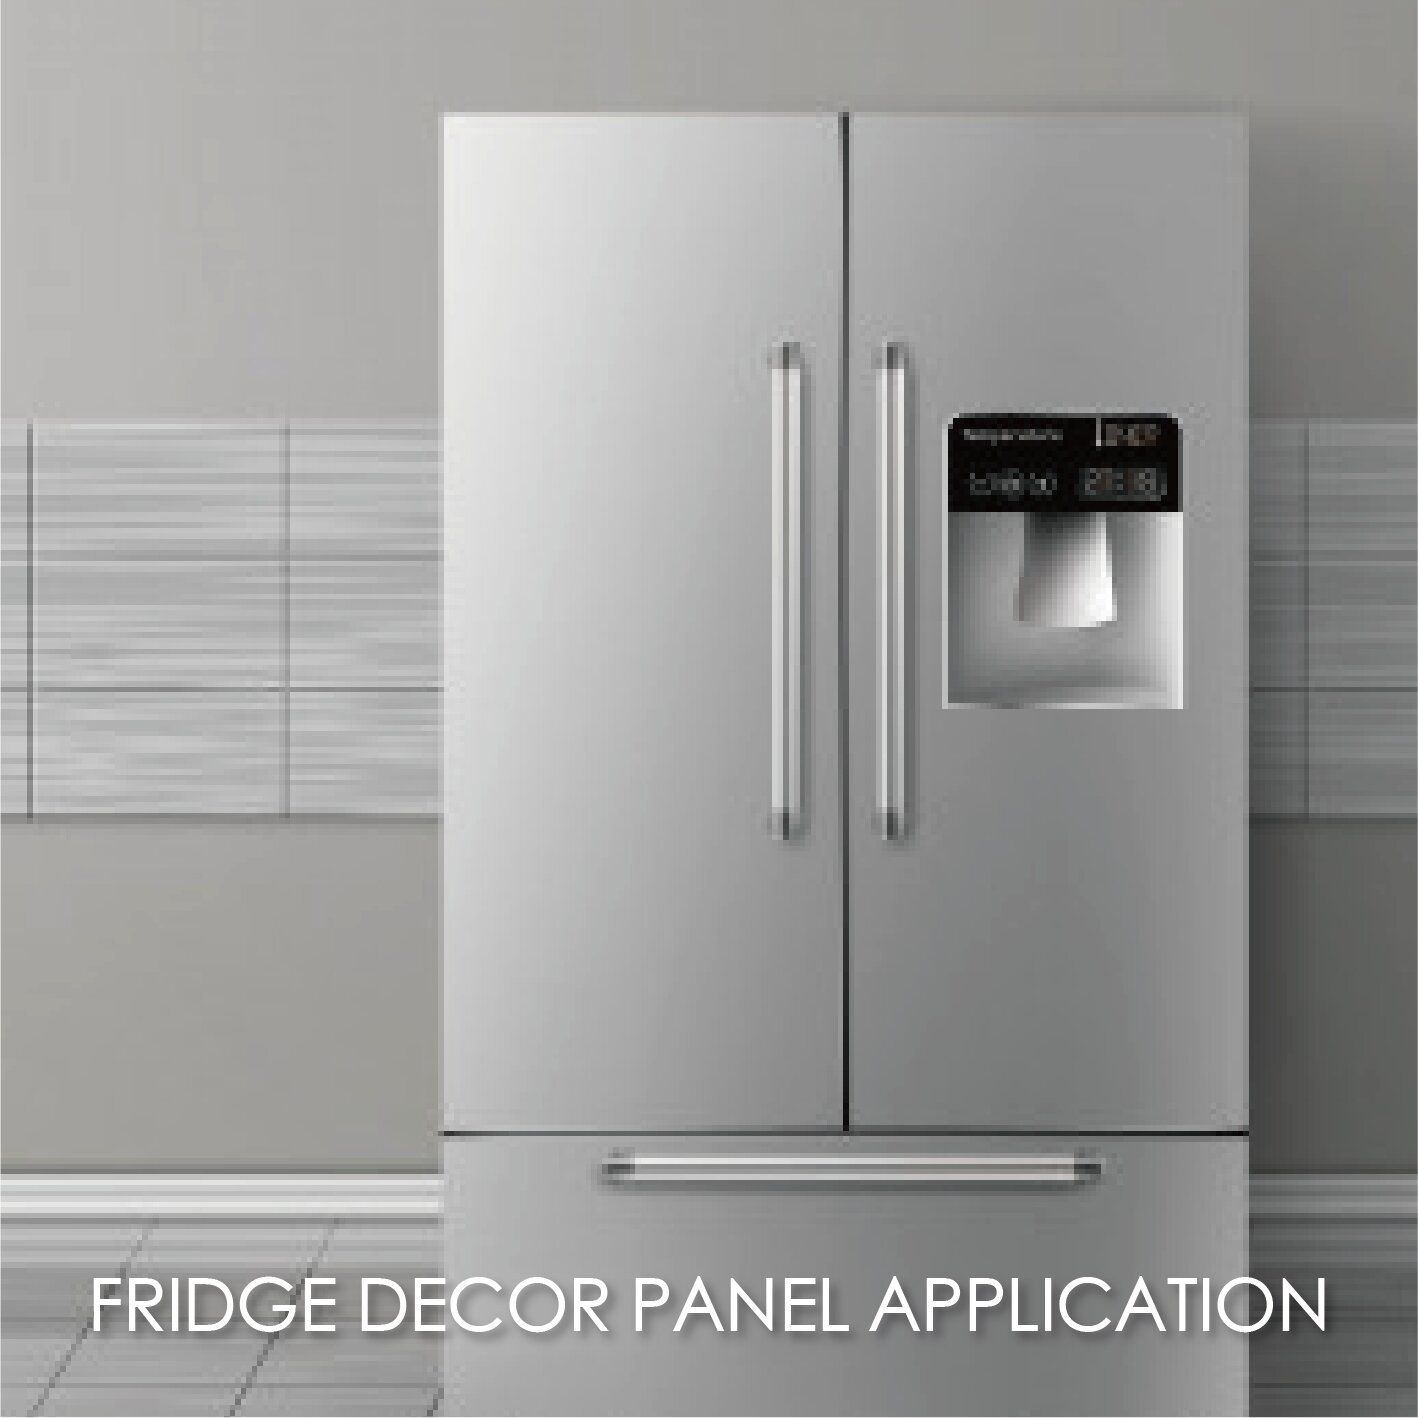 Vind een passende oplossing voor uw koelkast